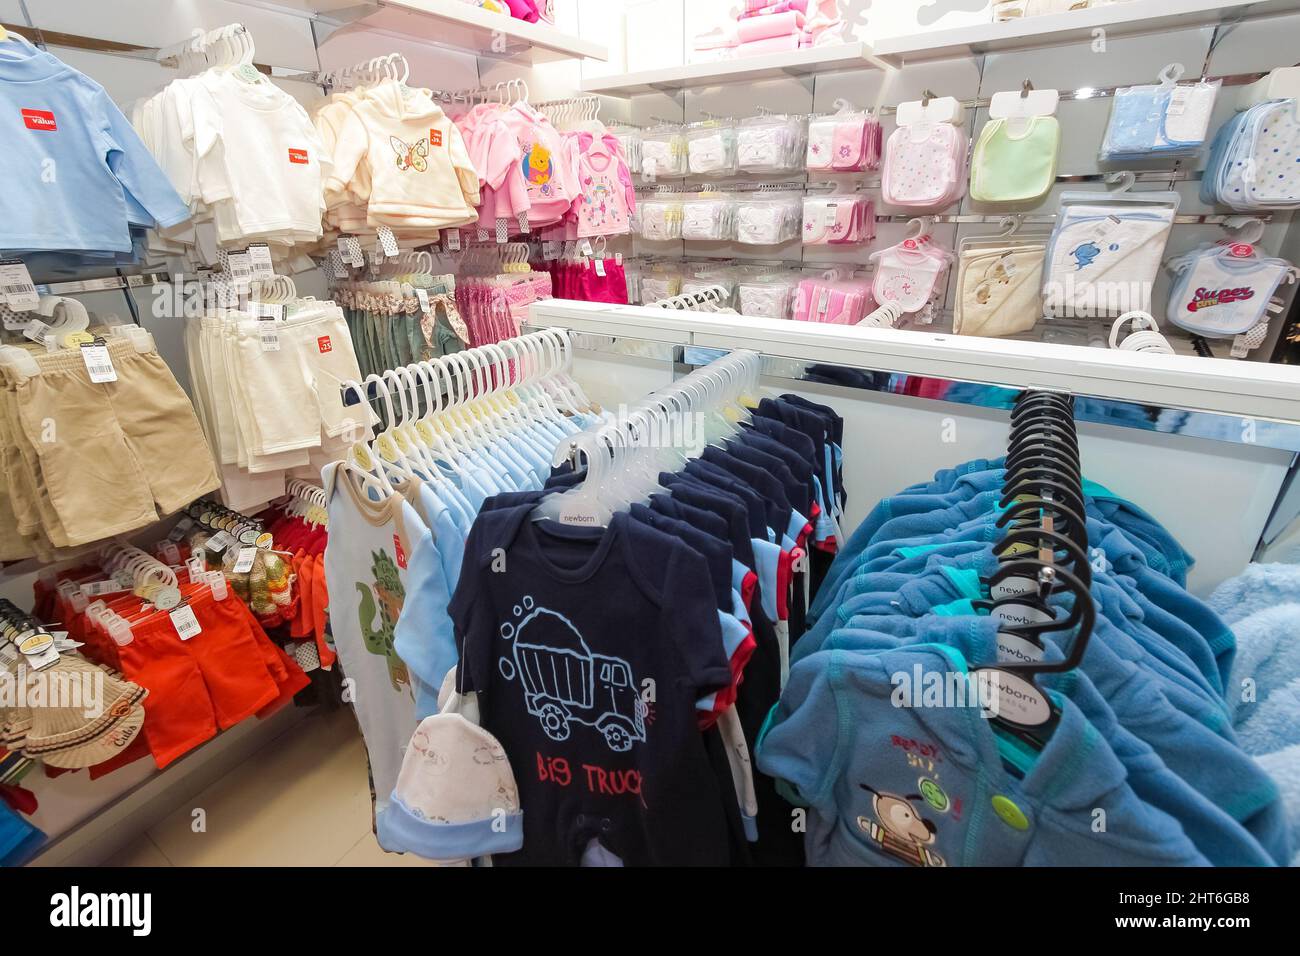 Perchas con ropa de bebé en el armario Fotografía de stock - Alamy